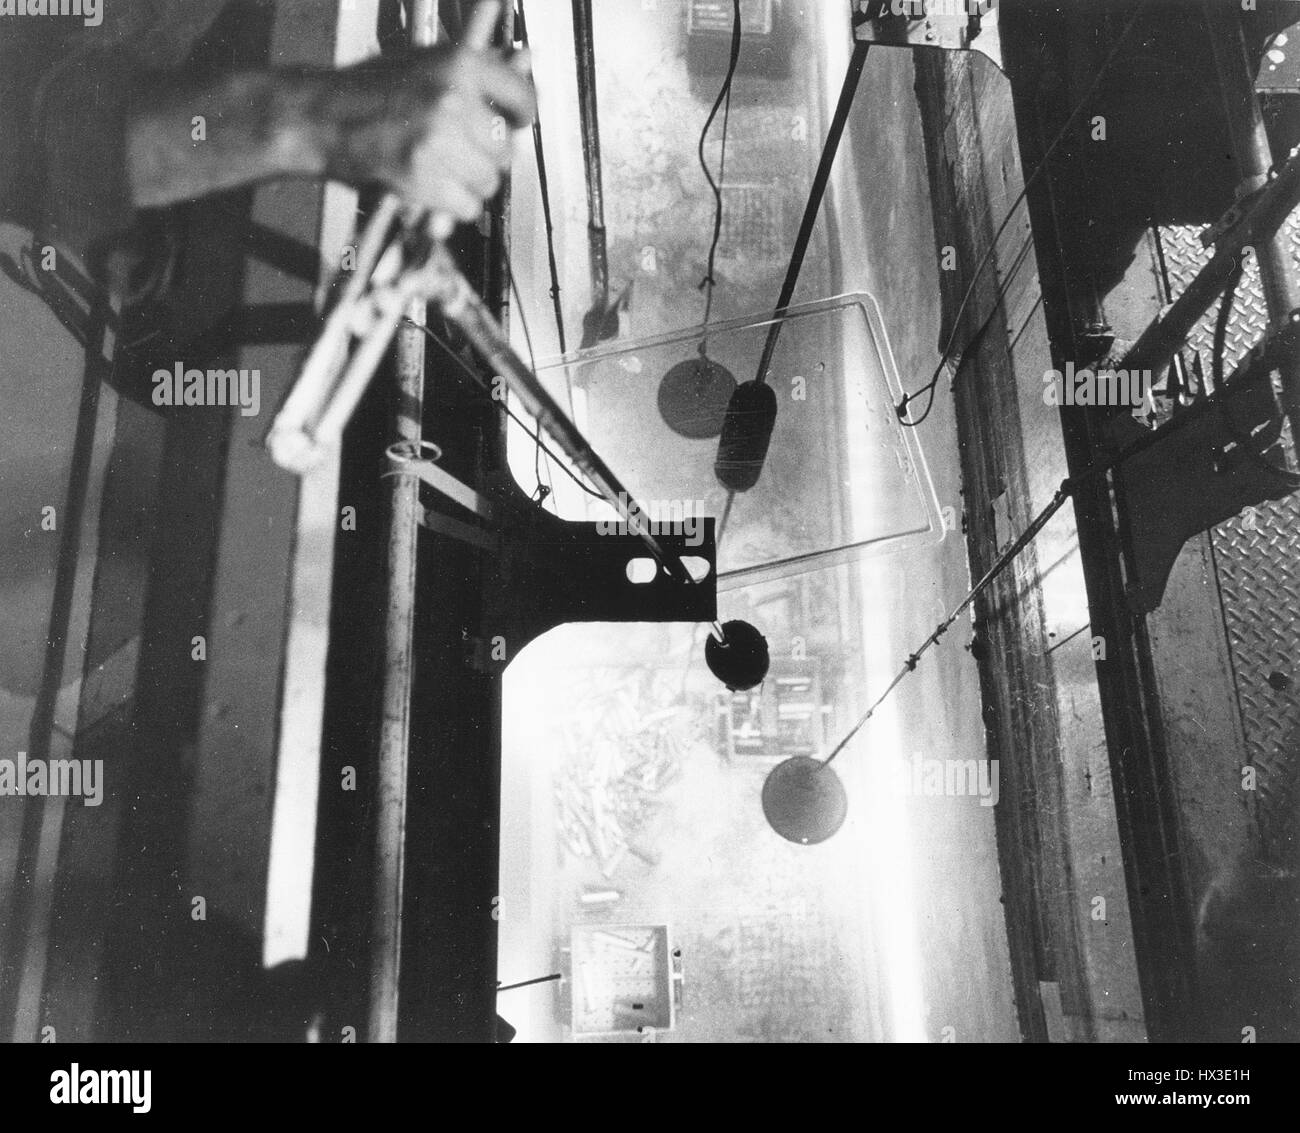 Un opérateur de Hanford's C éléments de combustible du réacteur sur le transfert des charges des boîtes de moins de 20 pieds d'eau après avoir été déchargé du réacteur suite à une irradiation, Washington, 1968. Image courtoisie du département américain de l'énergie. Banque D'Images